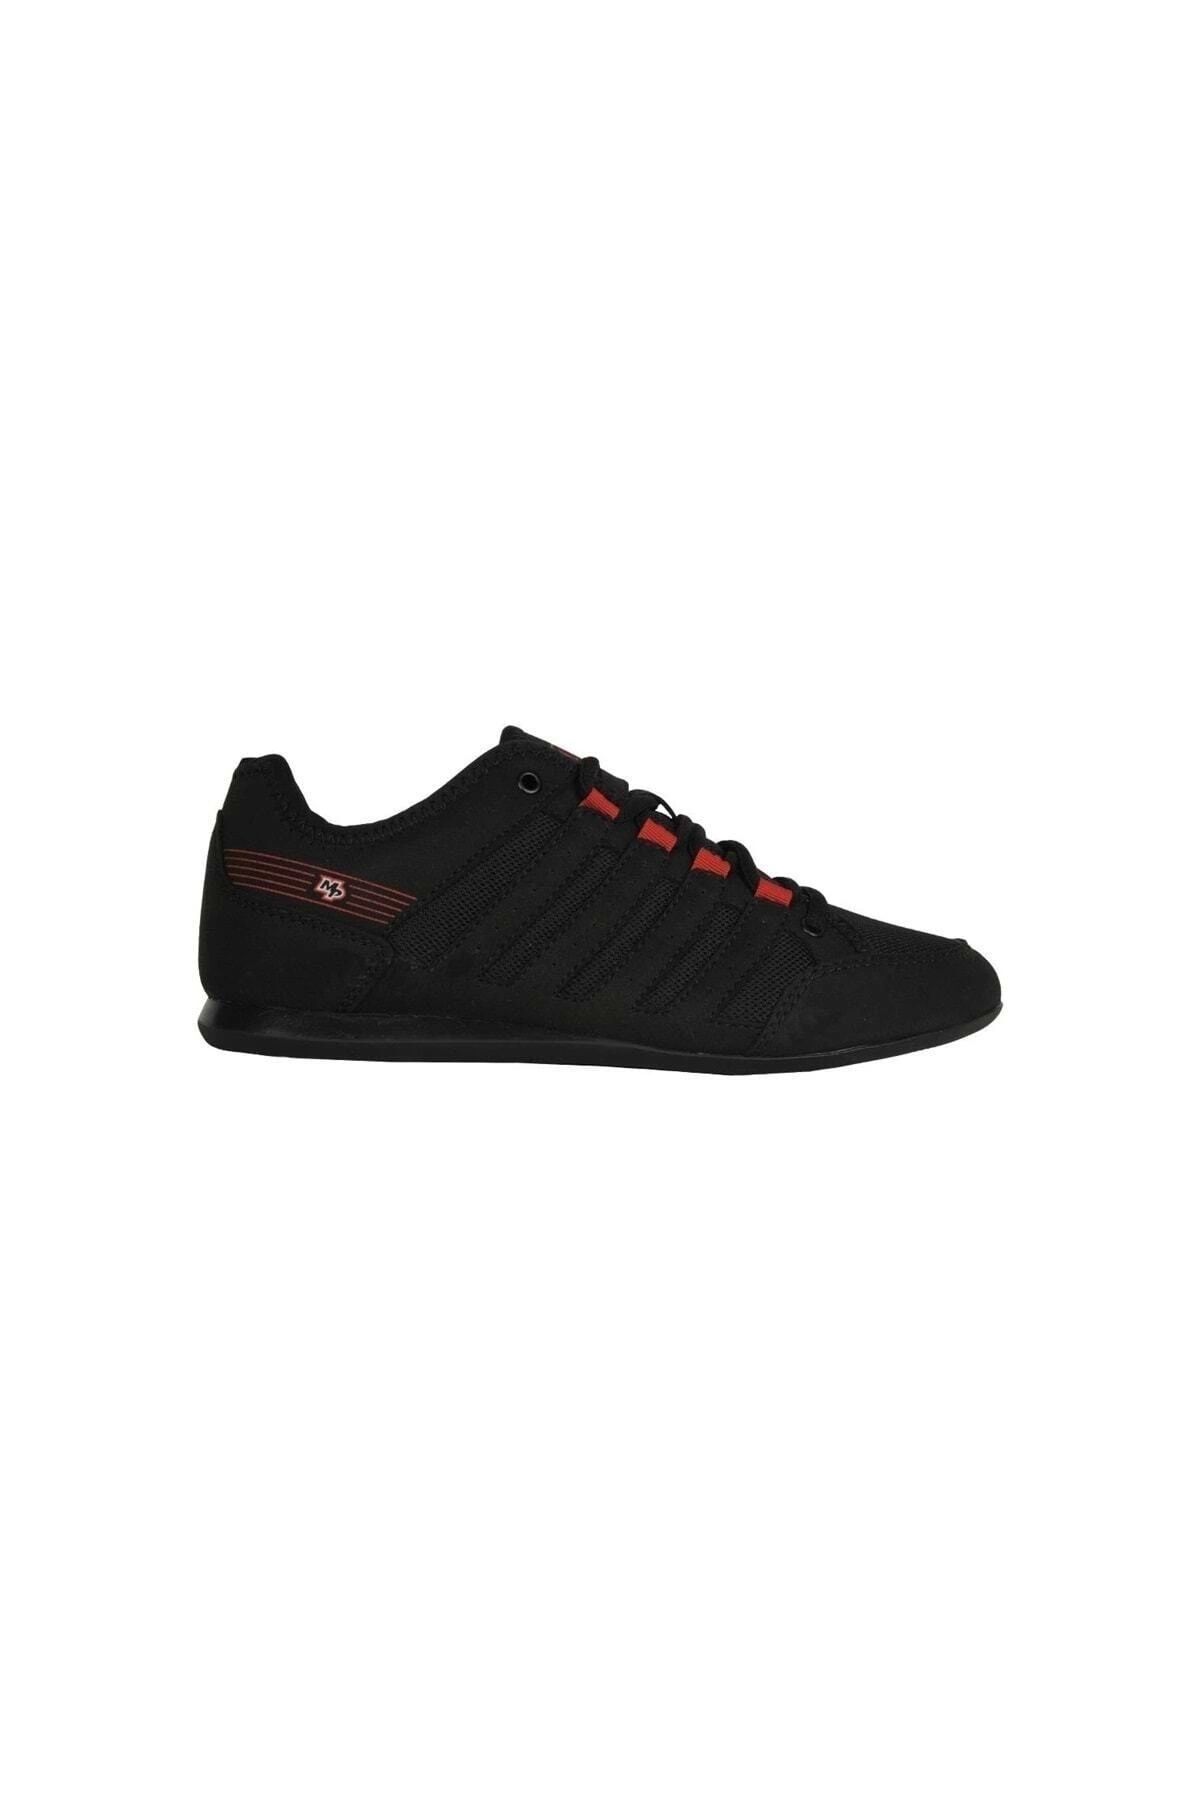 MP M.p 211-1088mr Erkek Sneaker Spor Ayakkabı - Siyah-kırmızı - 42